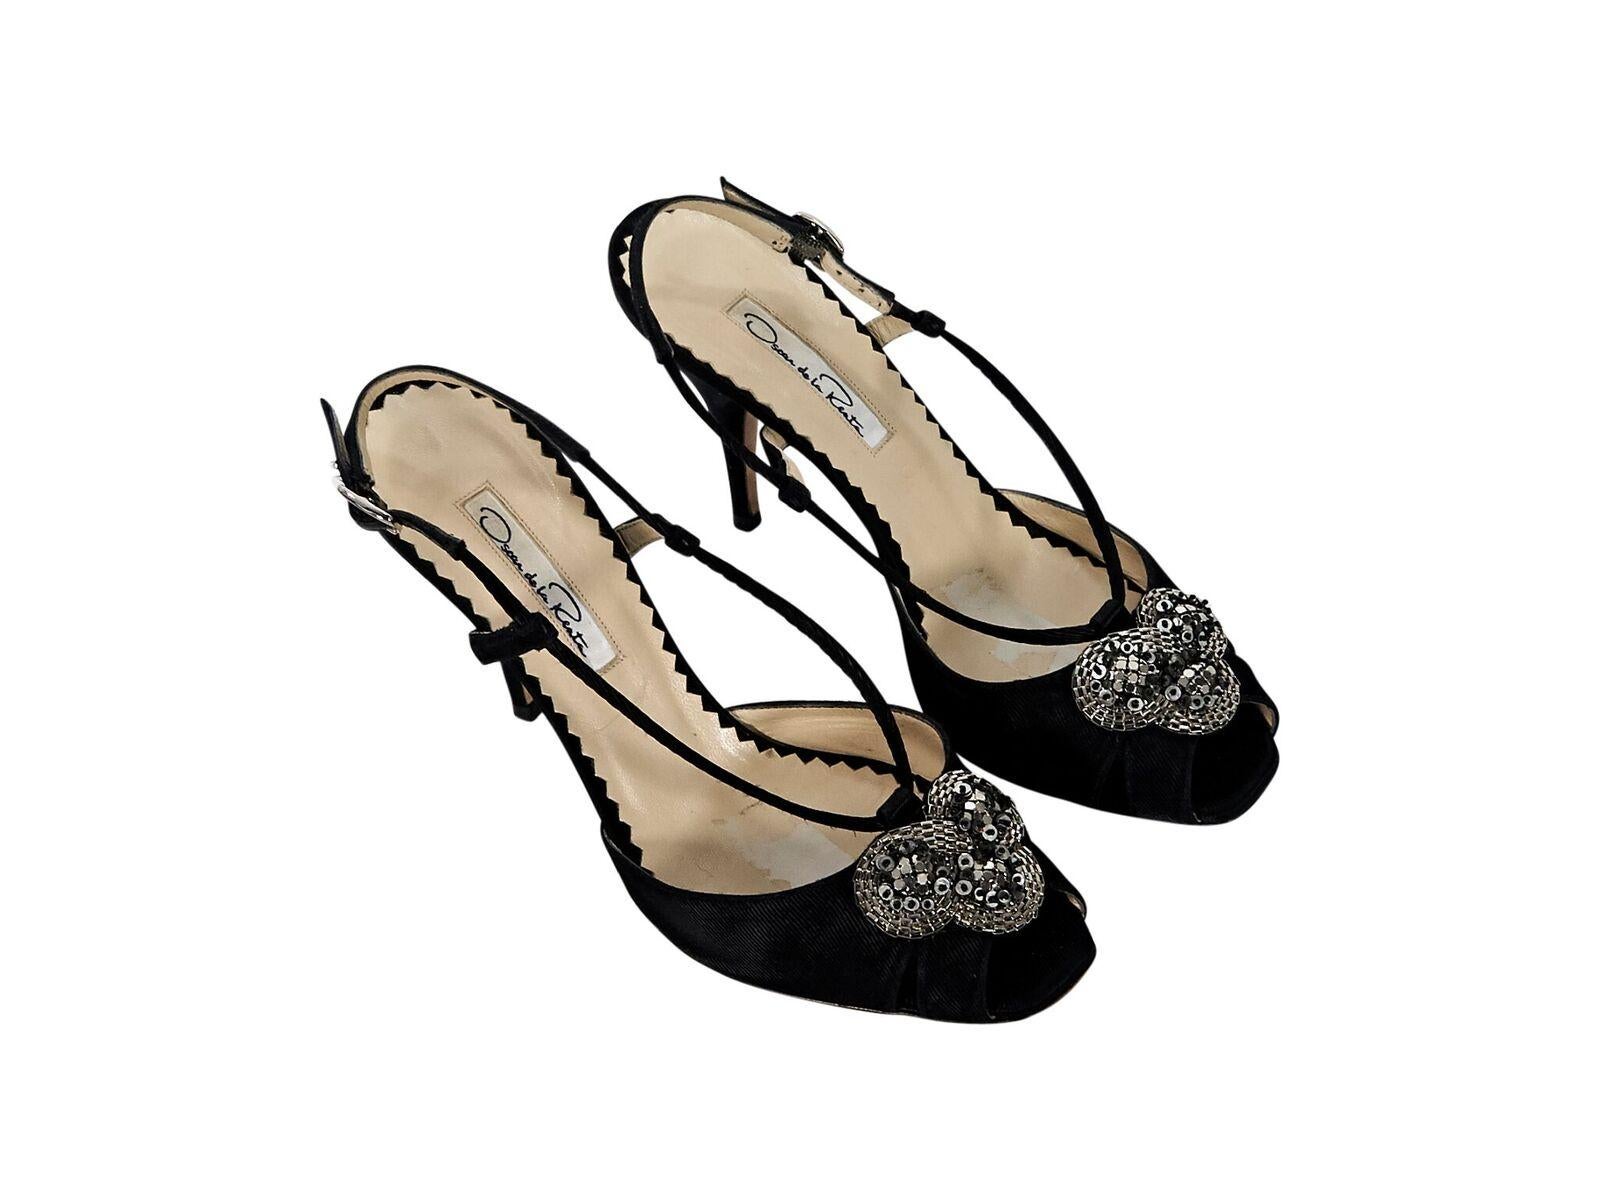 Product details:  Black textured evening sandals by Oscar de la Renta.  Adjustable slingback strap.  Embellished vamp design.  Peep toe.  EU size 37.5.  4